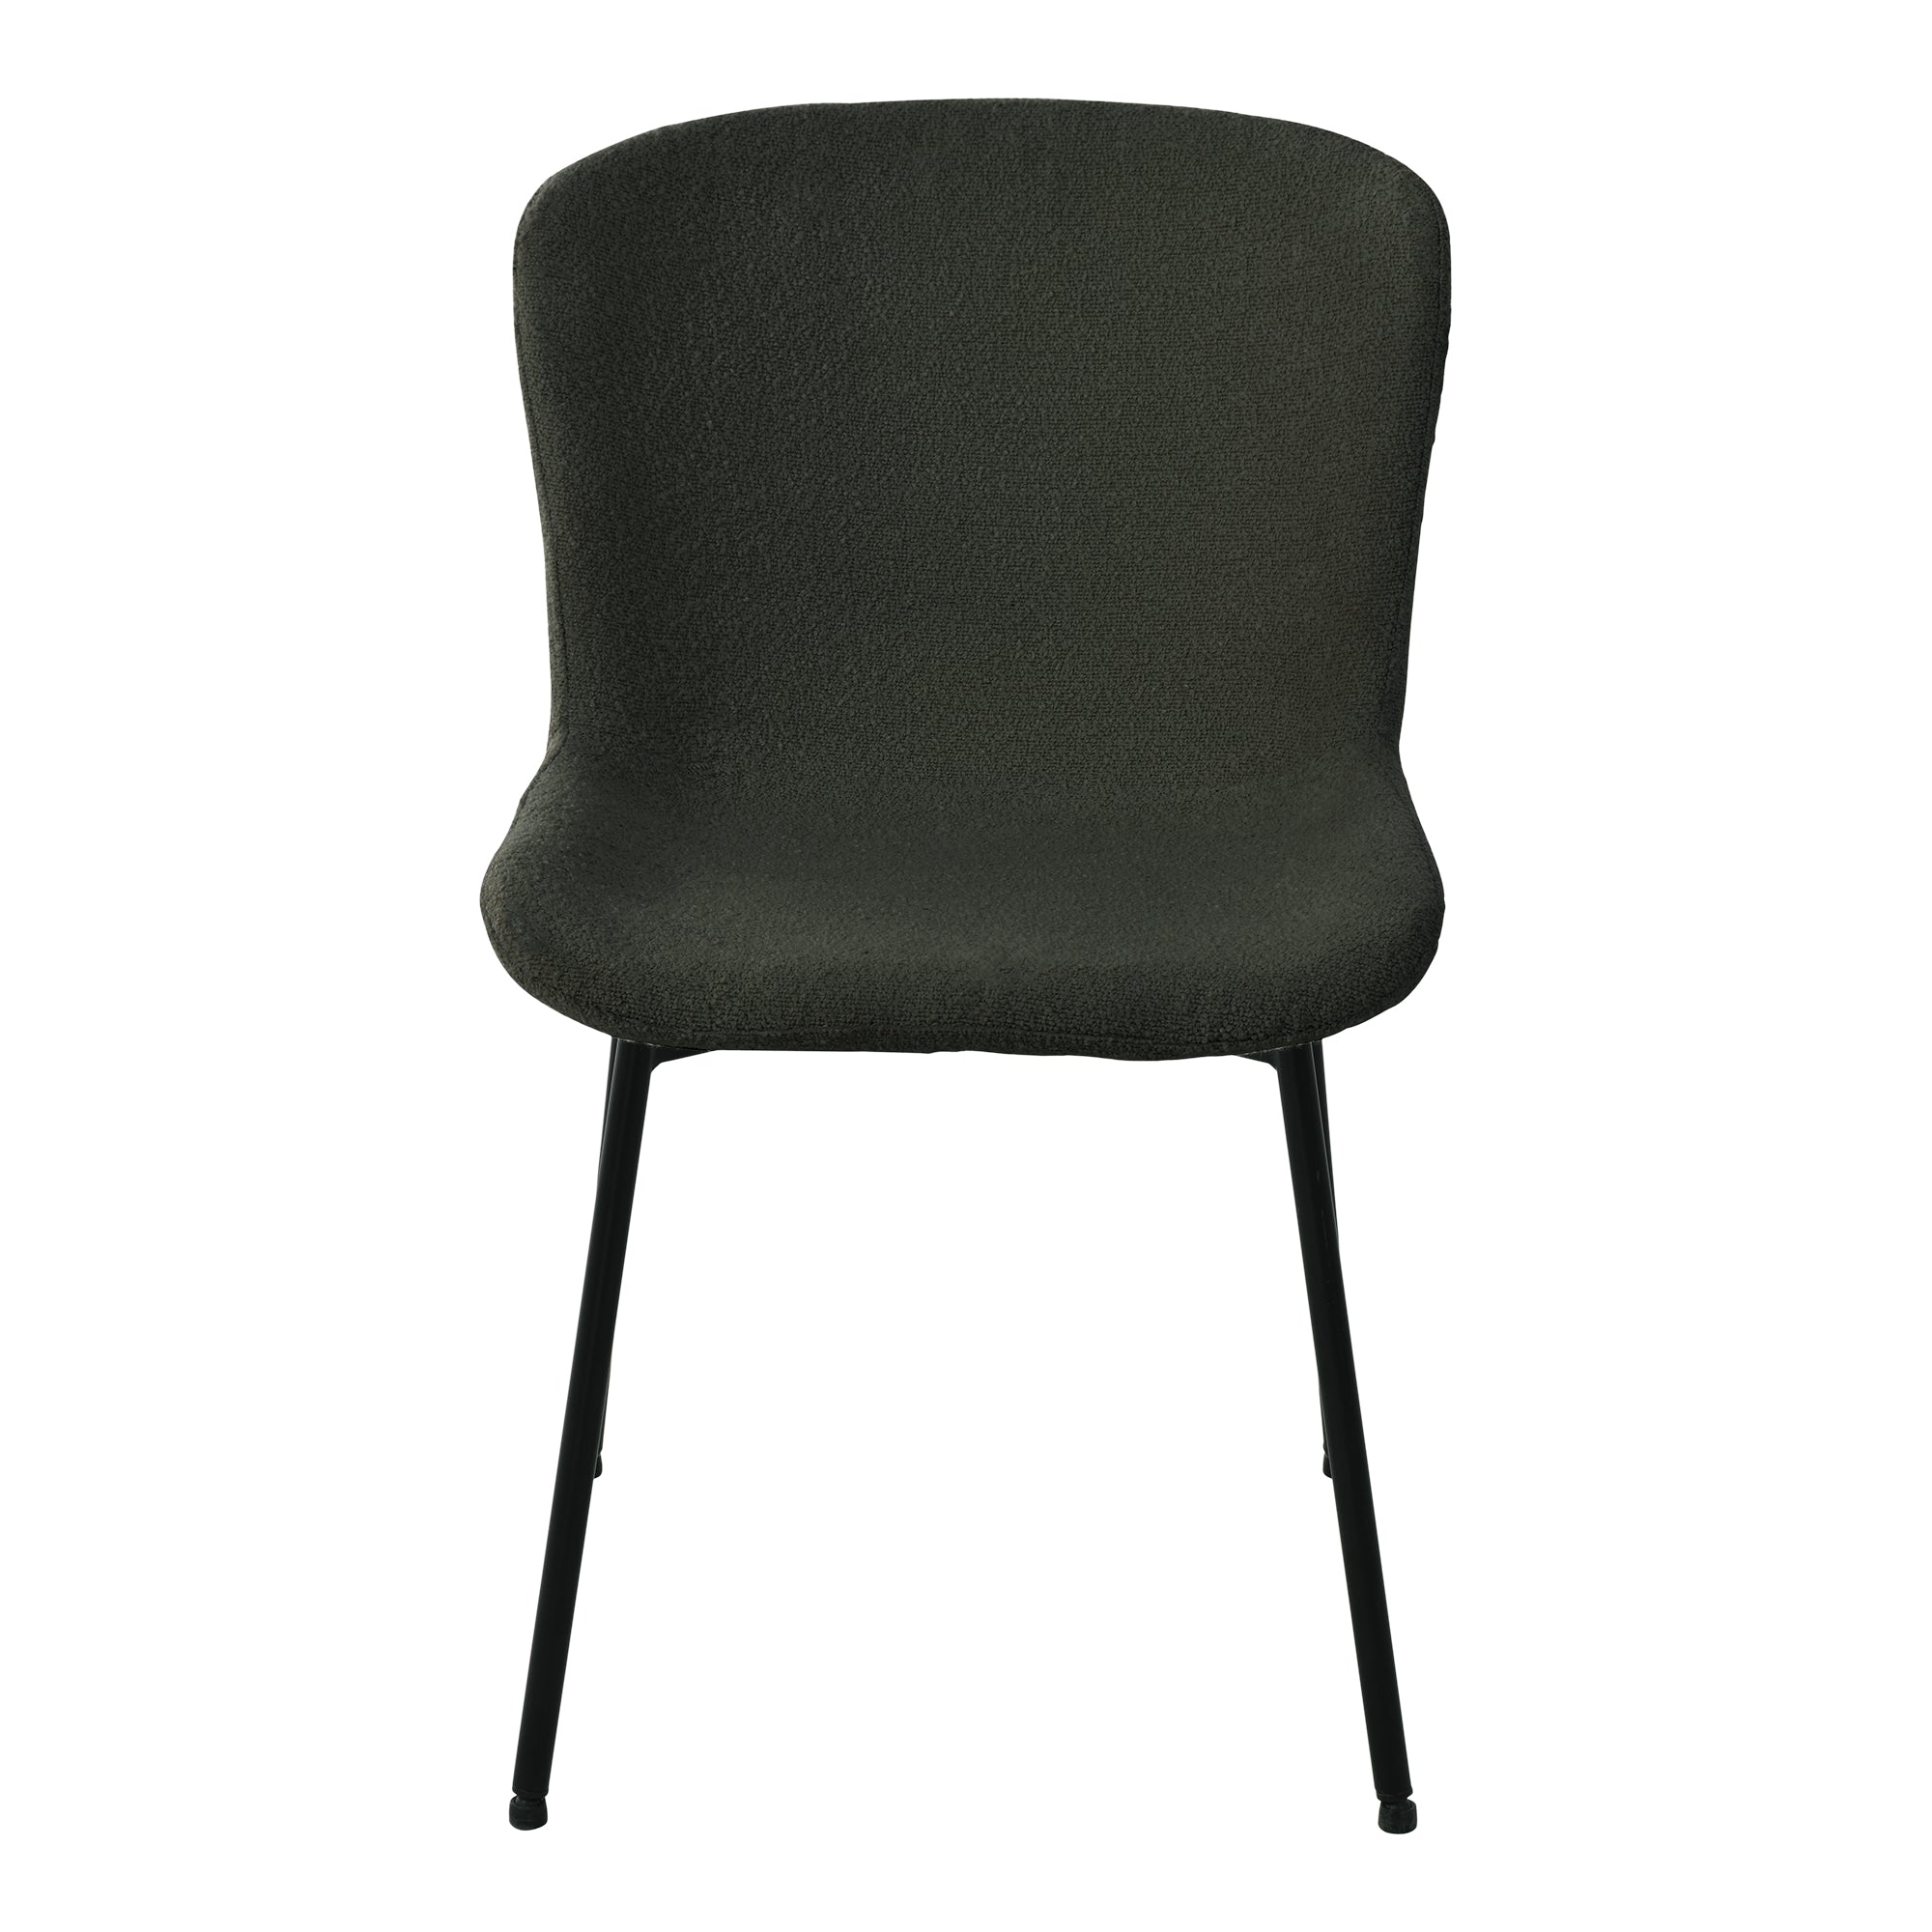 Maceda Spisebordsstol - Spisebordsstol I Bouclé, Mørkegrøn Med Sorte Ben ⎮ Sæt af 2 stk. ⎮ 5713917027163 ⎮ 1001137 